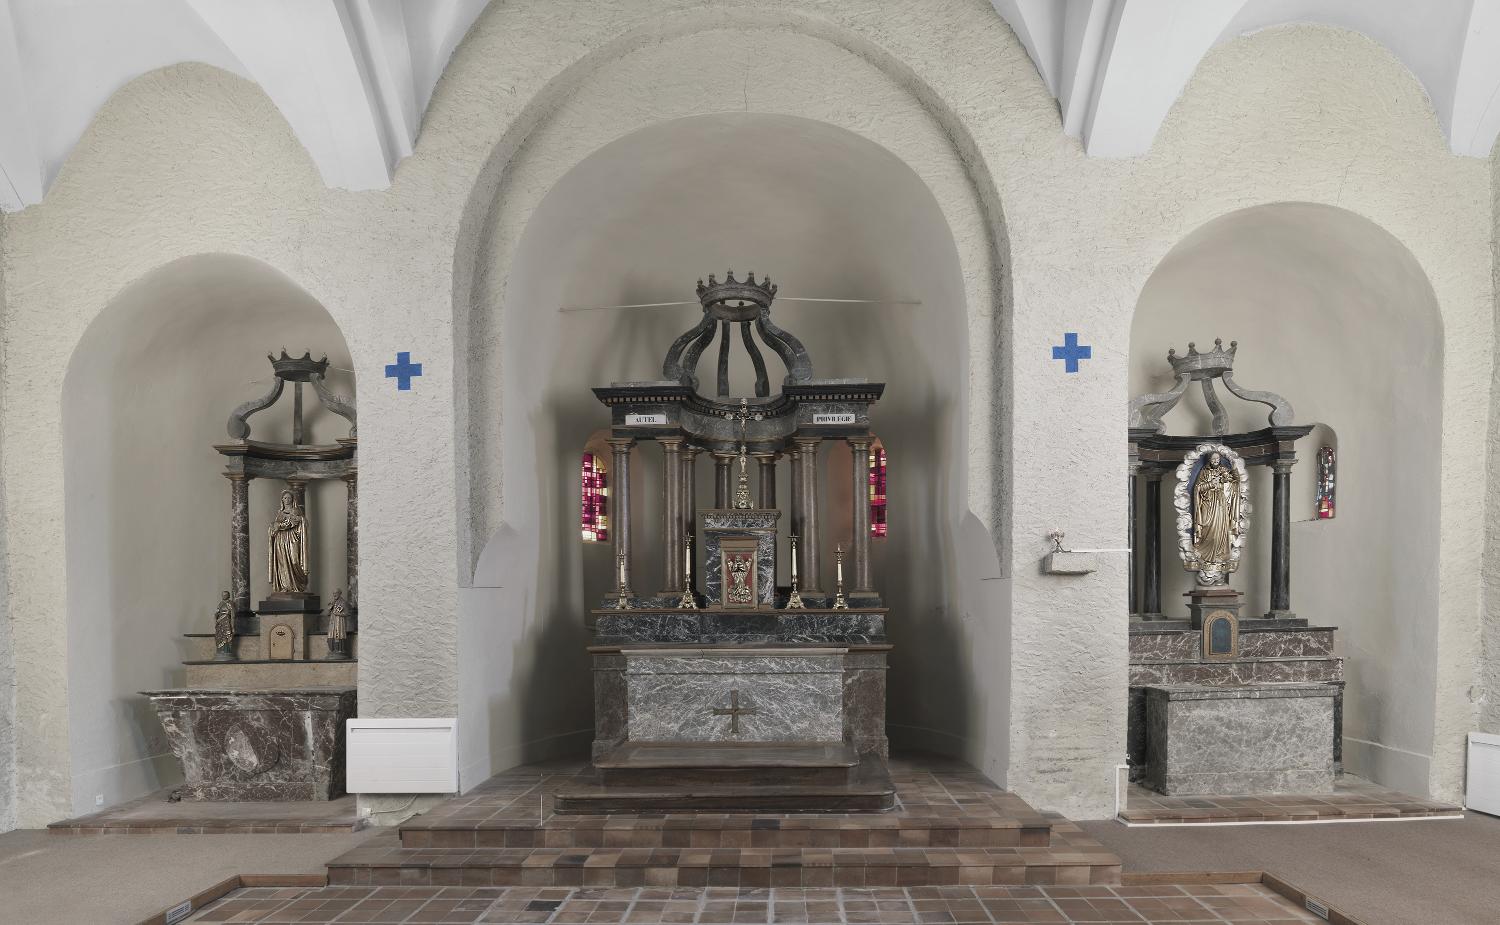 Ensemble du maître-autel (autel privilégié) et des autels latéraux (autel de la Vierge, autel du Sacré-Coeur), gradins, tabernacles et retables architecturés à colonnes